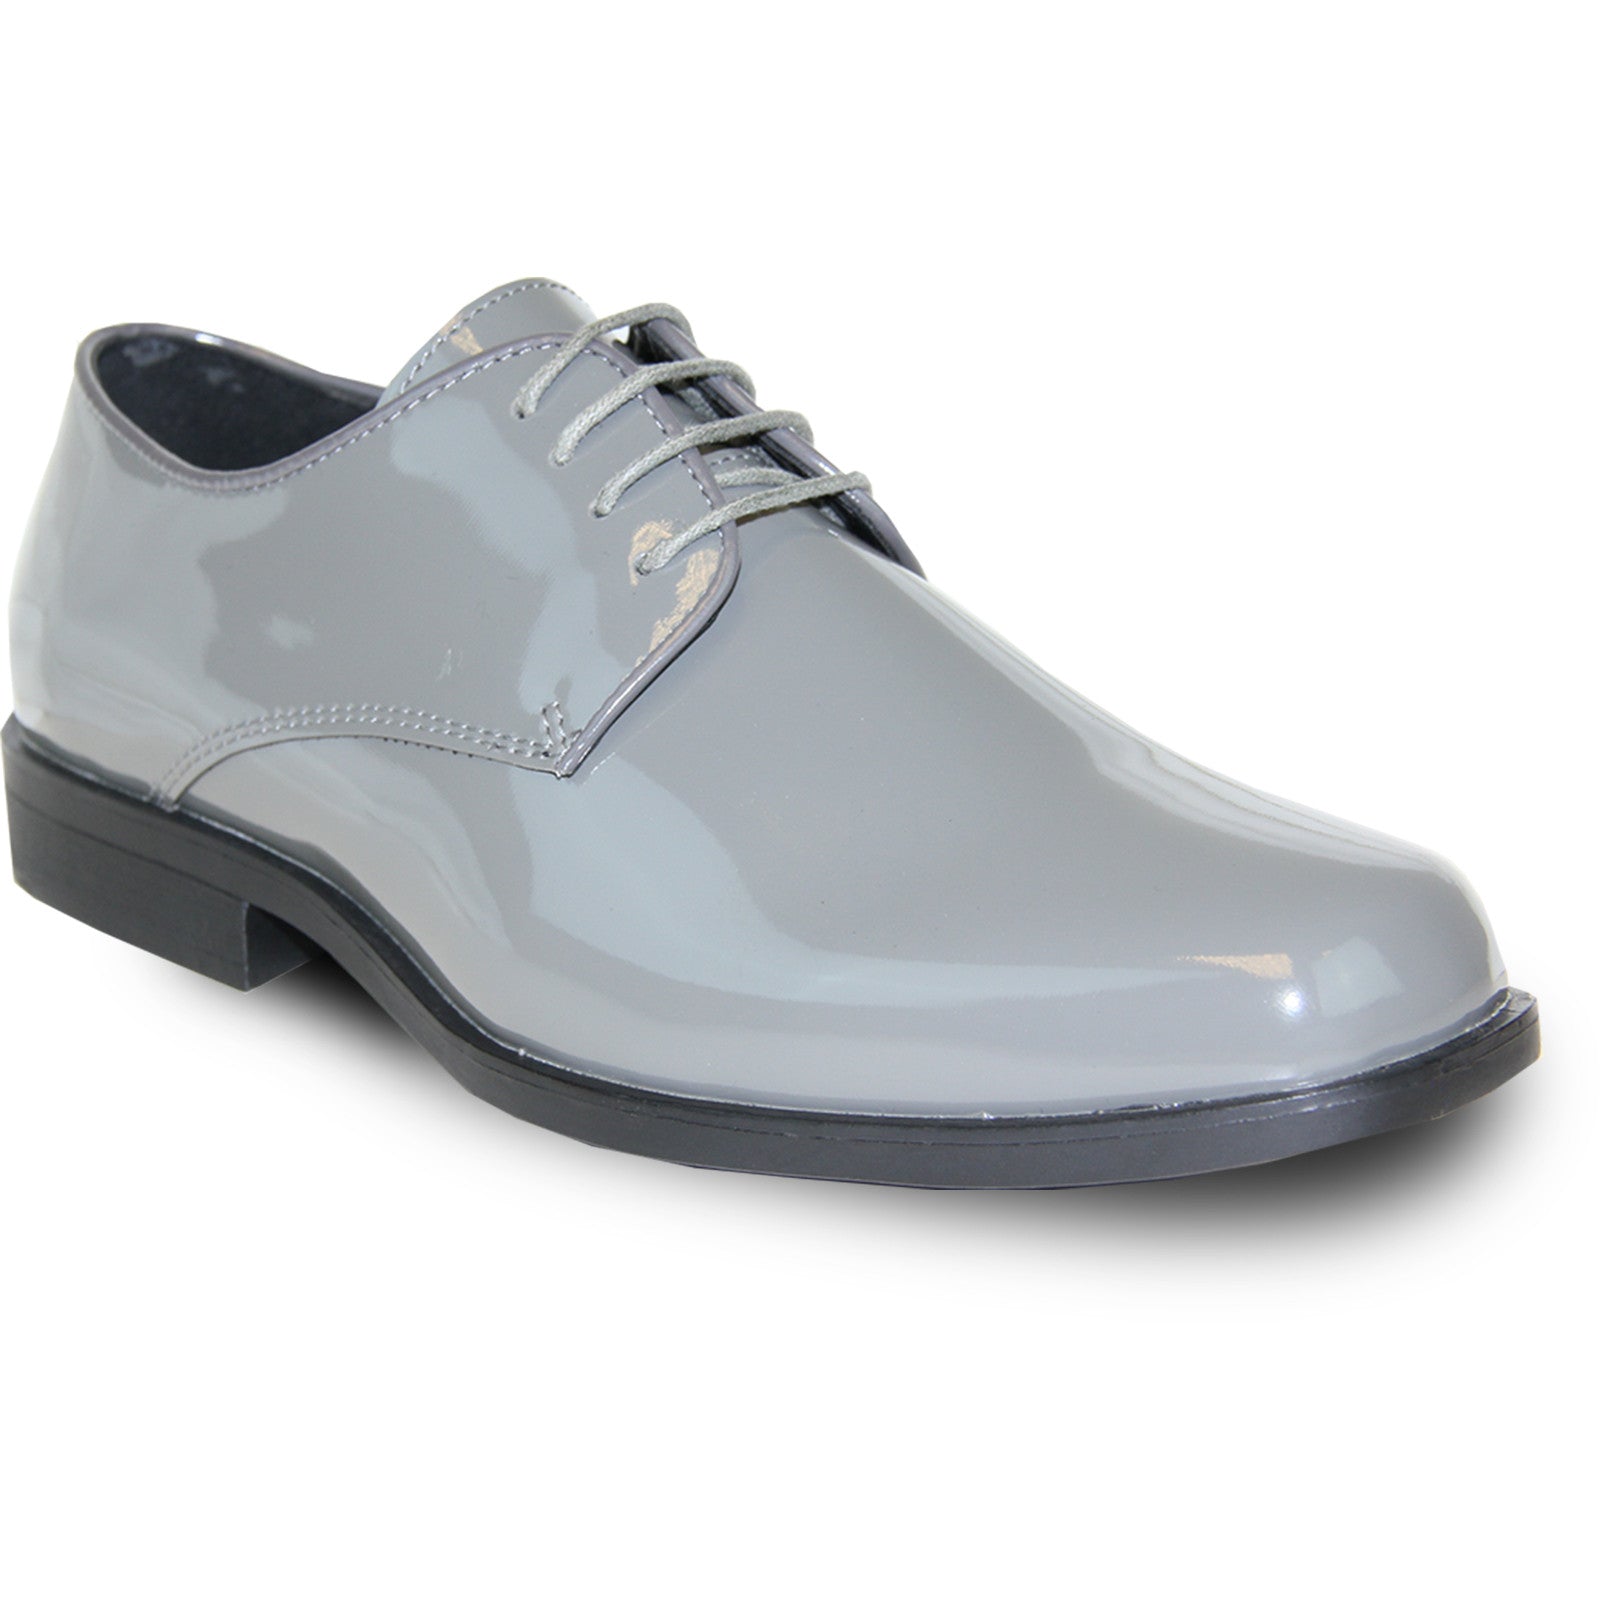 "Grey Patent Tuxedo Dress Shoe - Men's Classic Square Toe"